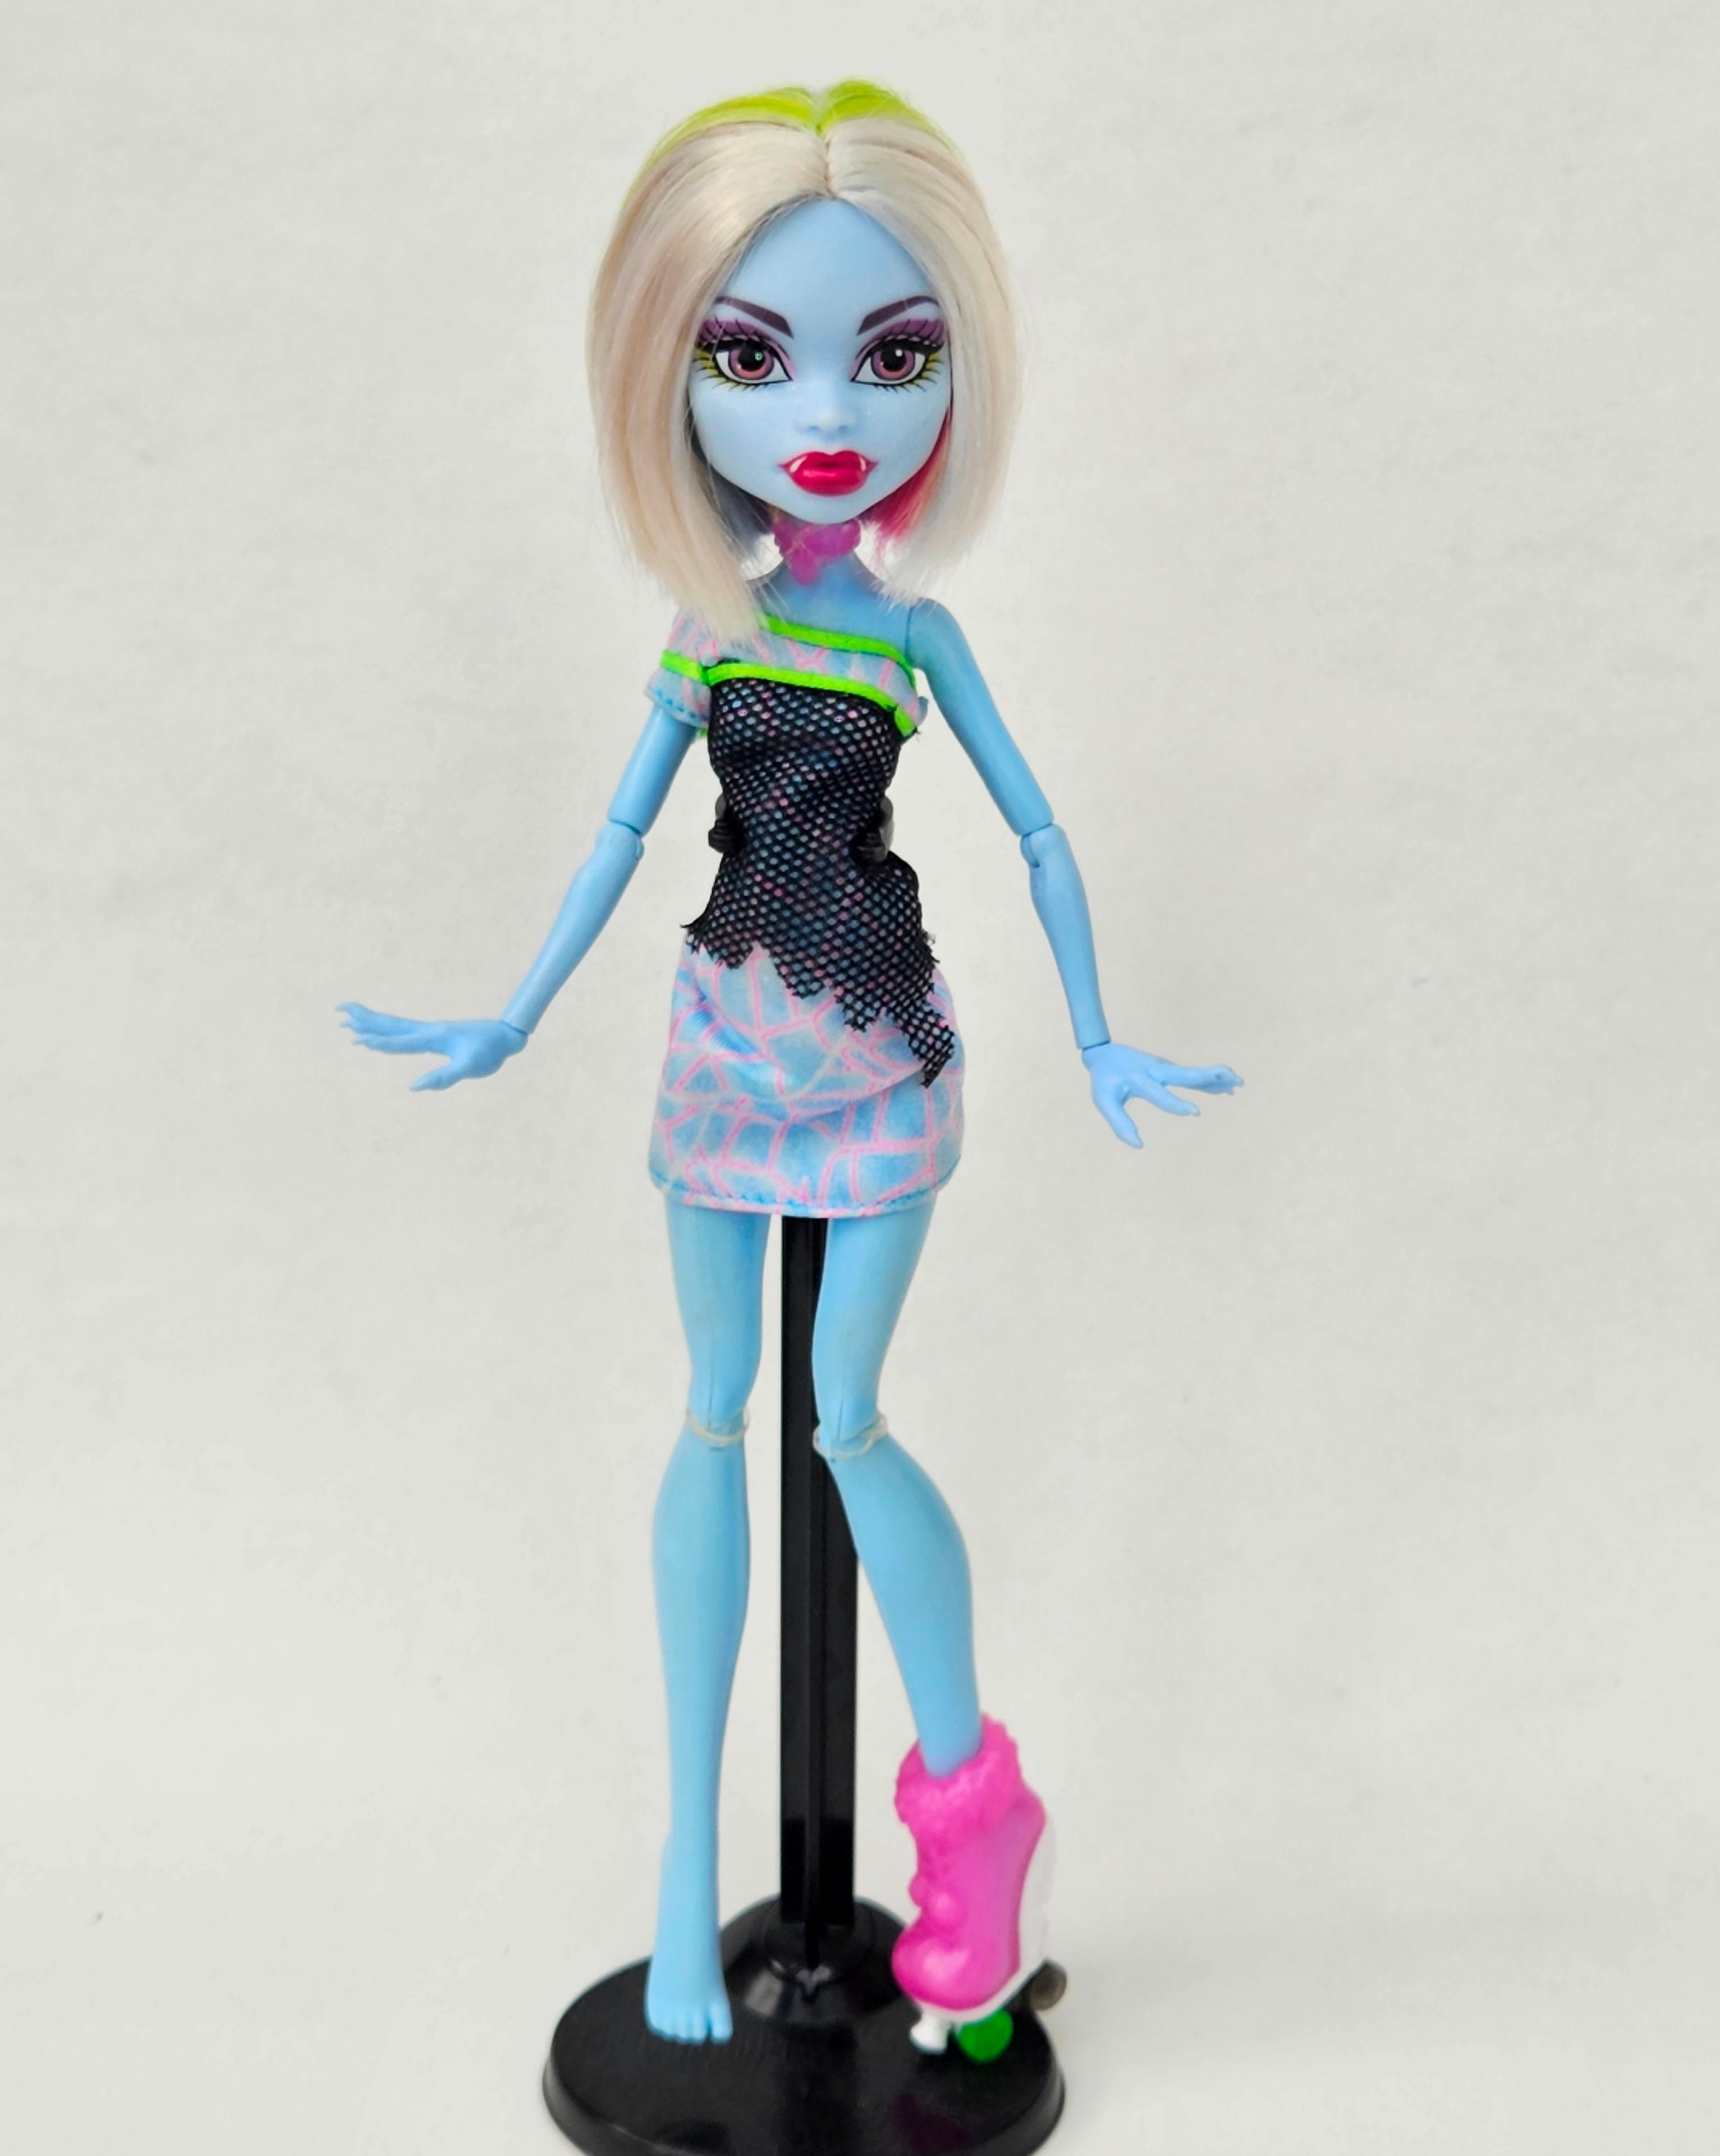 Skultimate Roller Maze Monster High Doll for Collectors, OOAK 